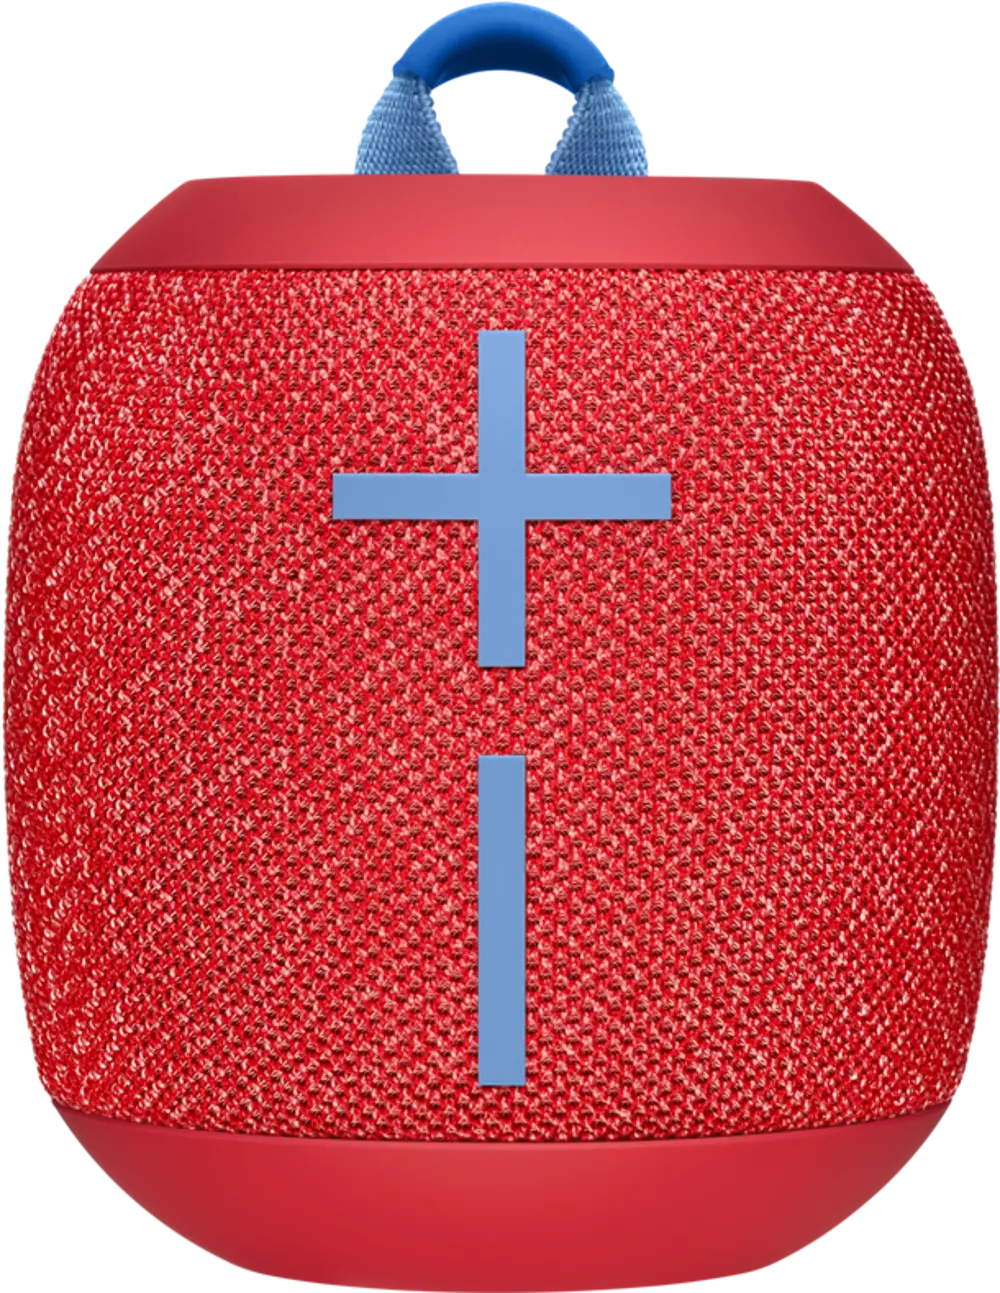 UE,WONDERBOOM2,RADICAL RED Ultimate Ears WONDERBOOM 2 Portable Bluetooth Speaker - Radical Red-1